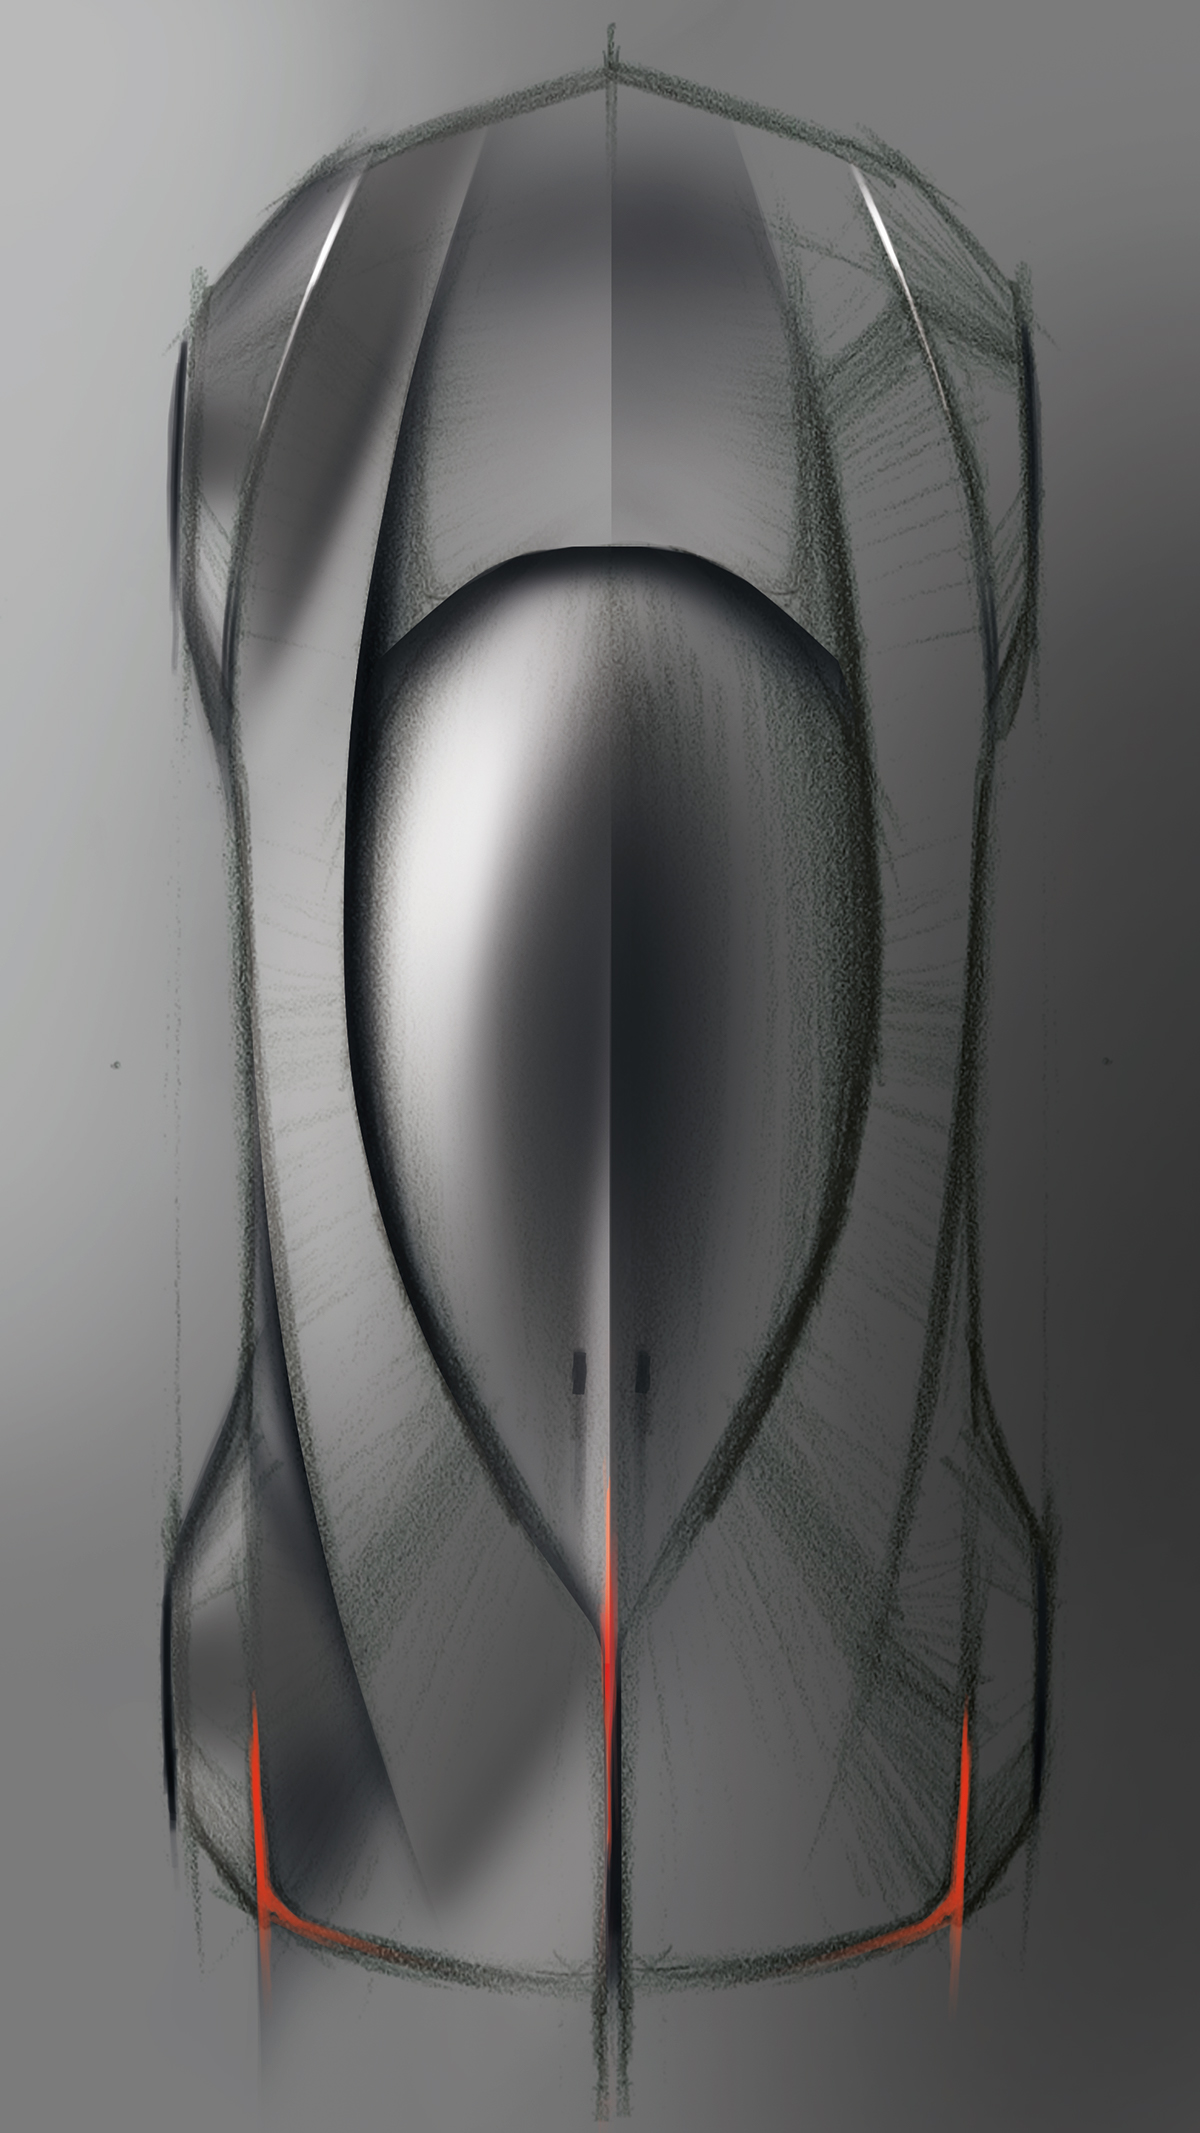 viscom future concept Transportation Design vision sketch doodle Render photoshop speedforms